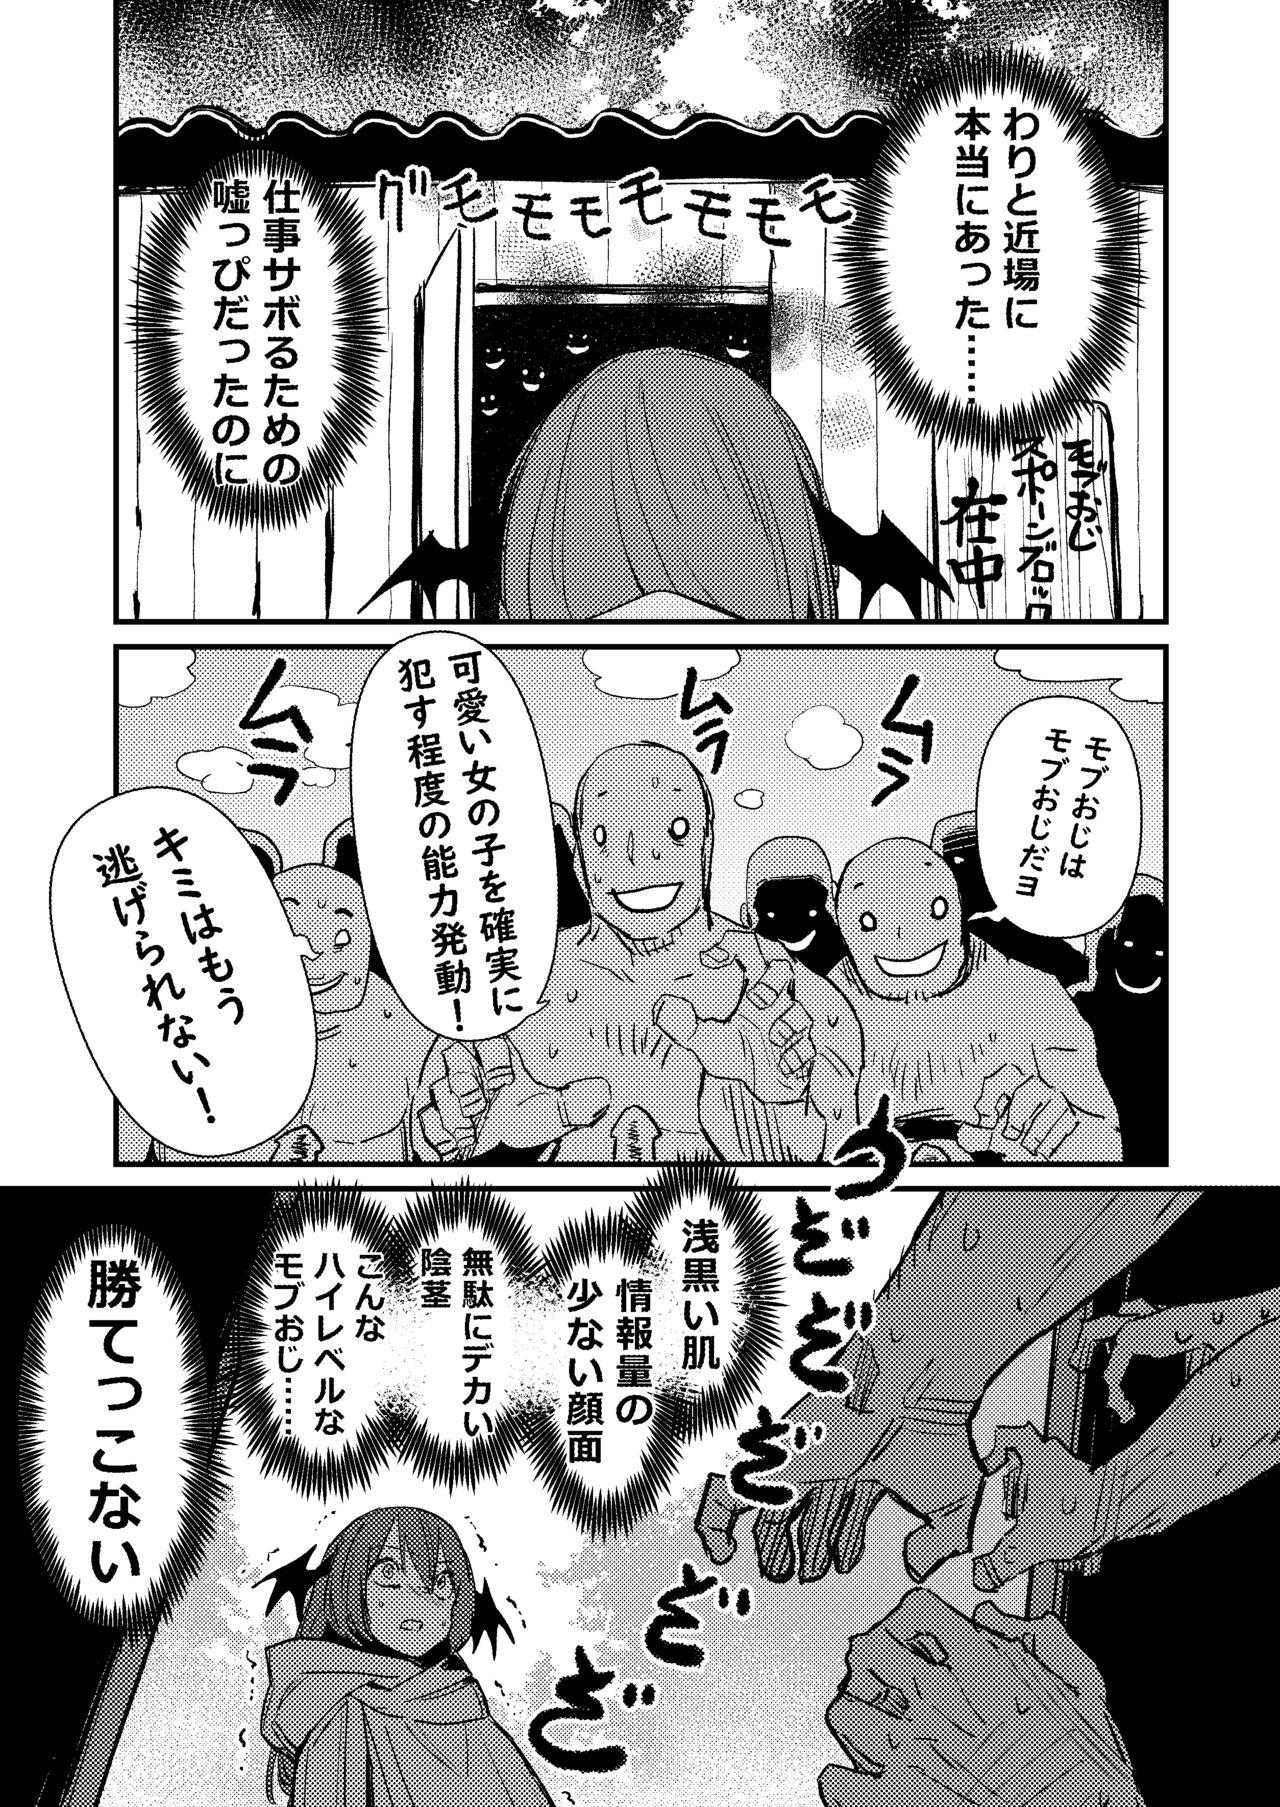 Affair Koakuma/18+/Manga/8p - Touhou project Novinho - Page 3